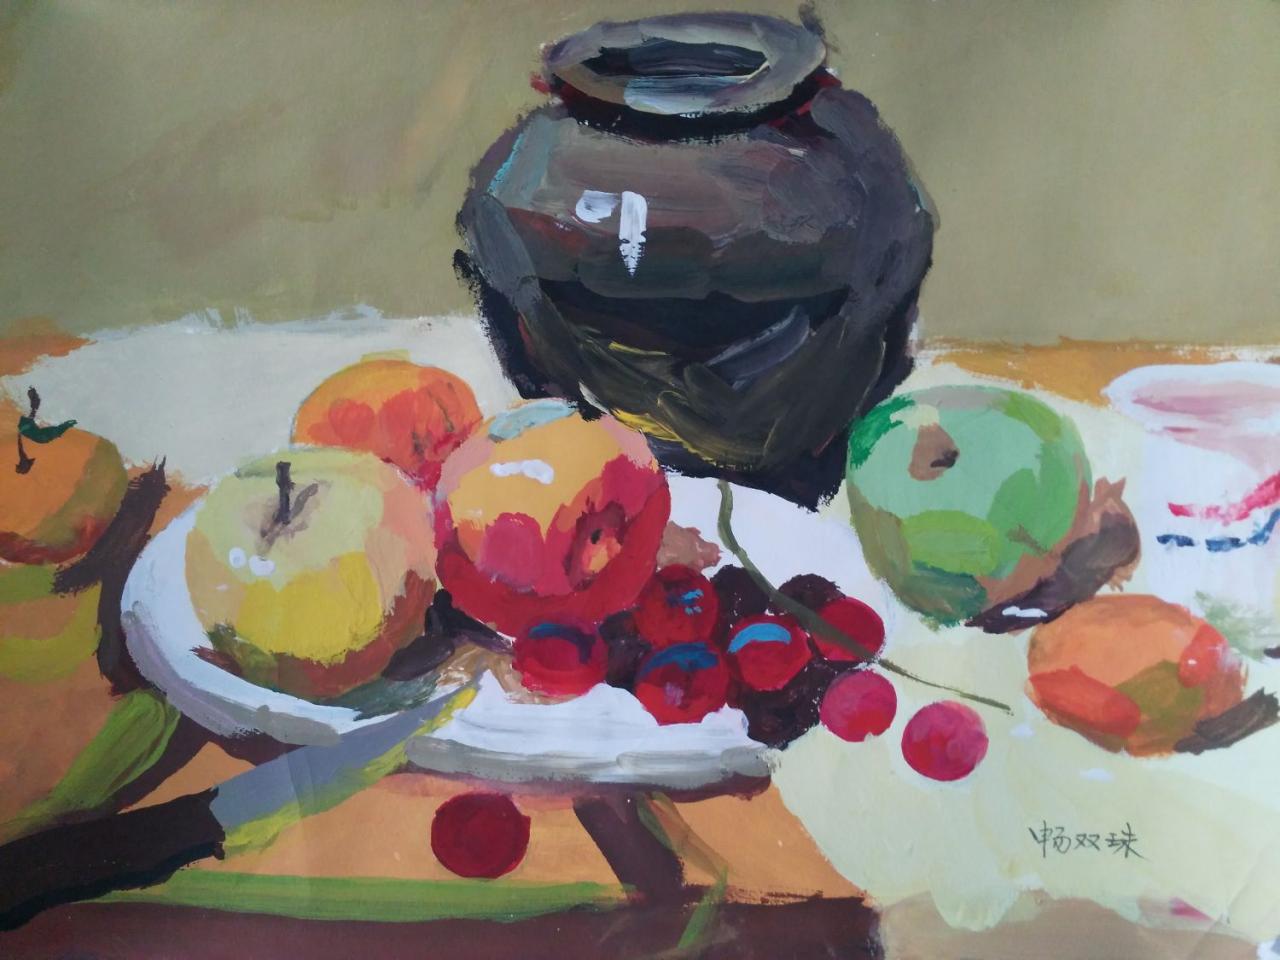 水粉静物 陶罐、苹果、葡萄、盘子、水果刀等 畅双珠画